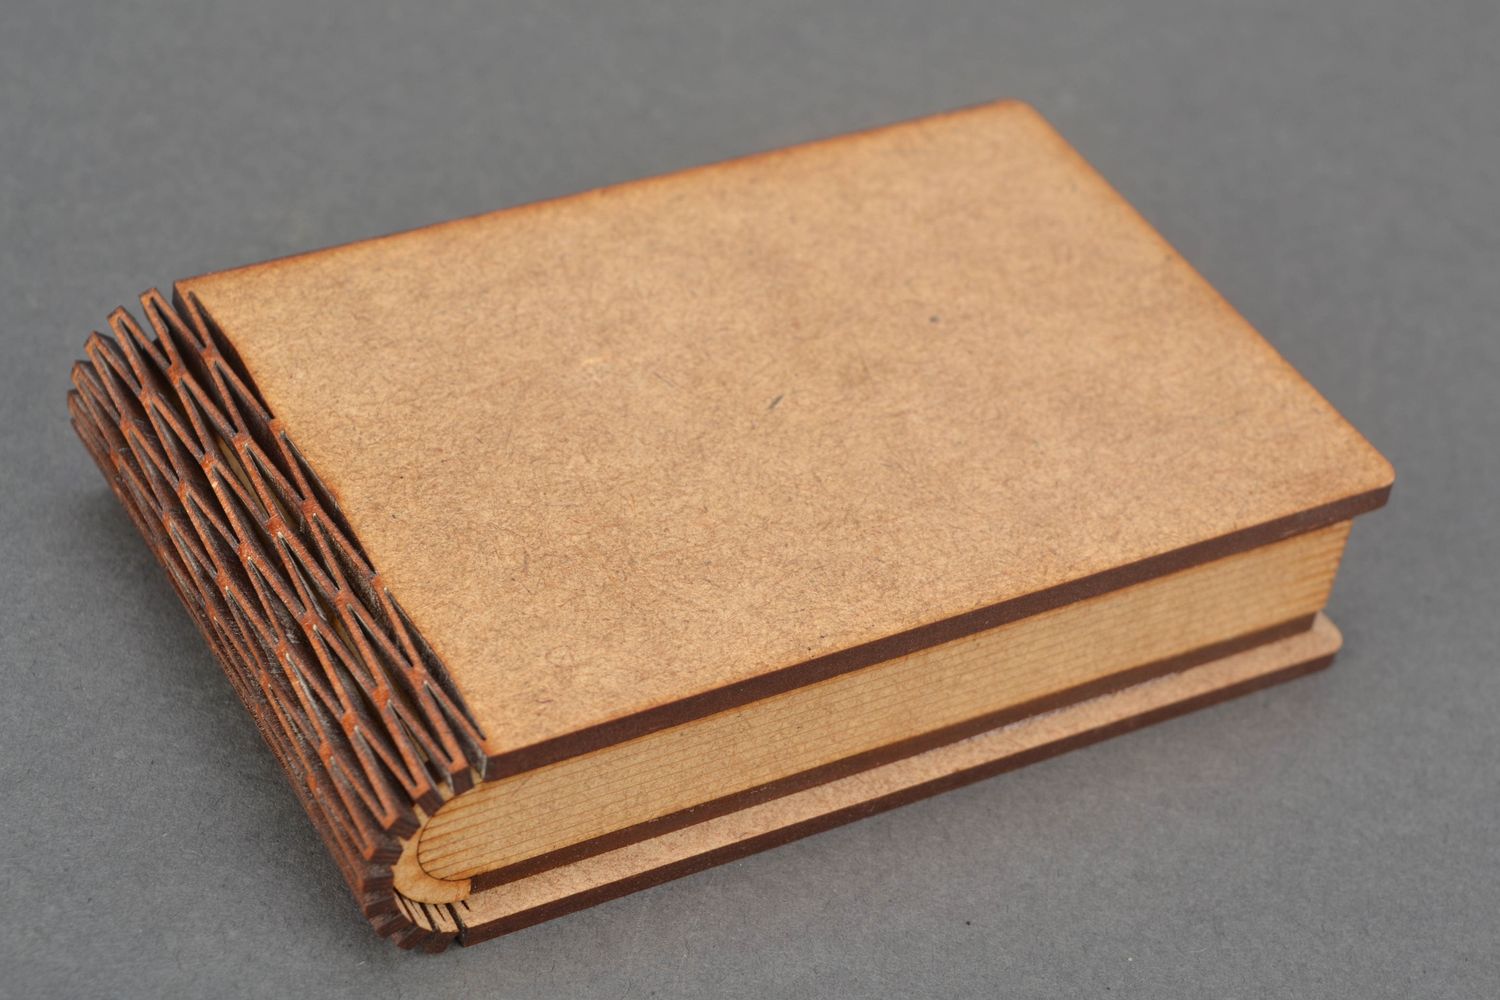 Book shaped fiberboard blank box for creative work photo 1